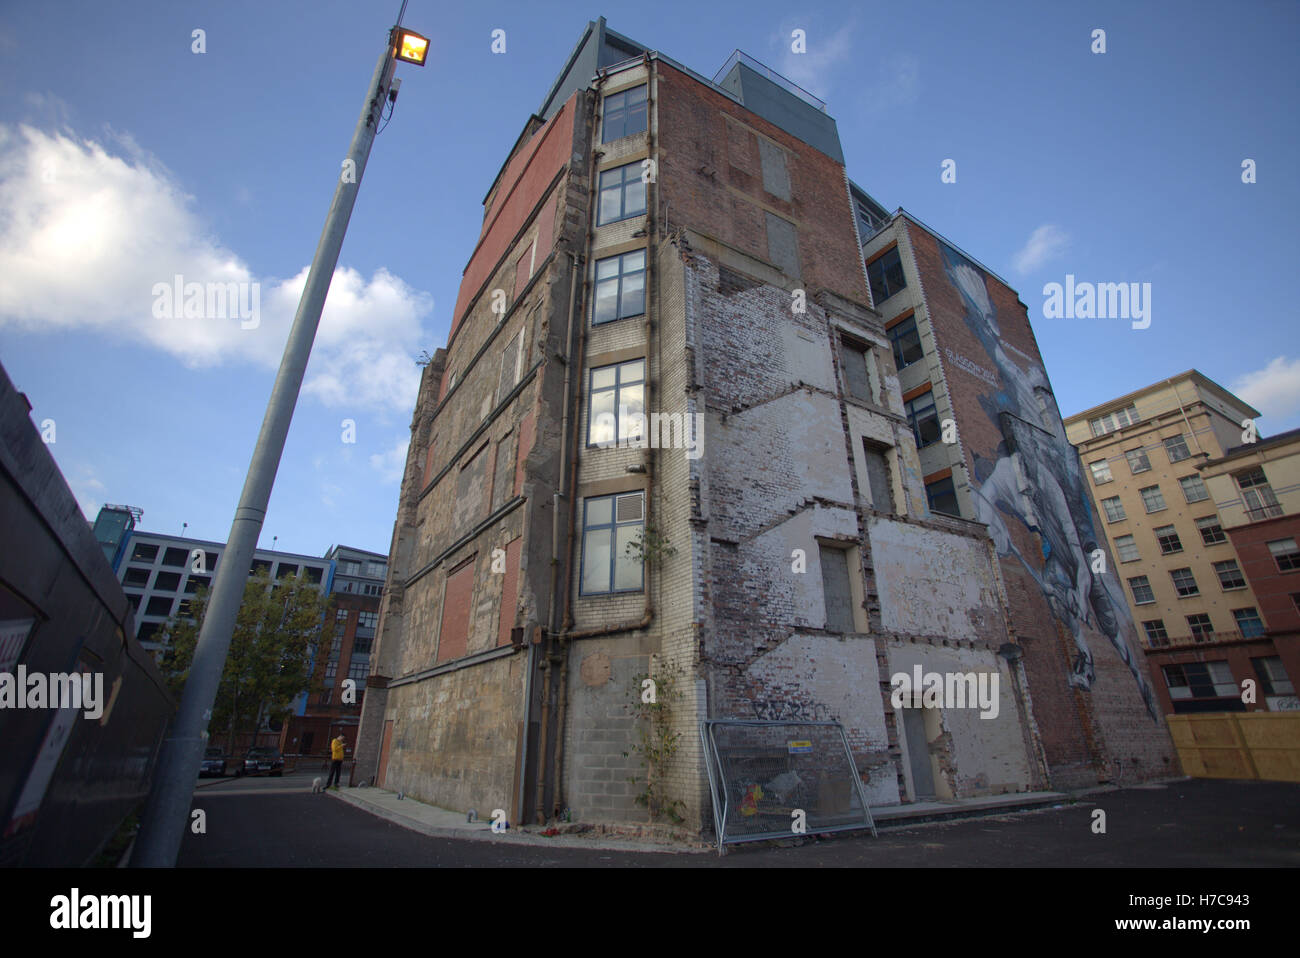 Área Candleriggs merchant city escenas callejeras con edificios que muestran signos de renovación Foto de stock